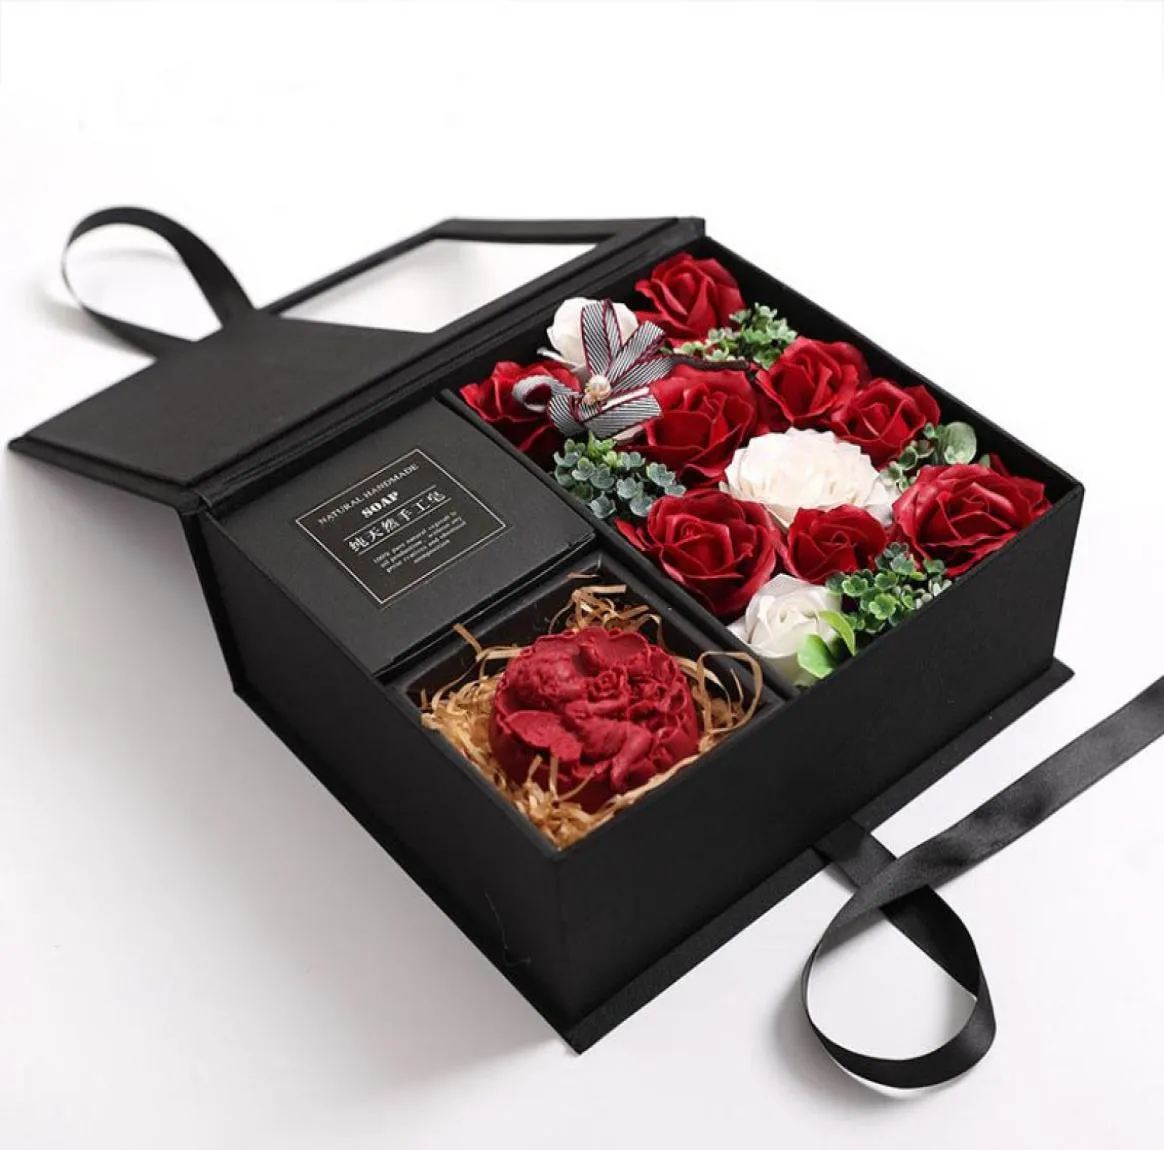 Savon parfumé Valentine Rose artificielle baignable ange Rose boîte-cadeau mariage anniversaire petite amie romantique pétales parfumés fleurs C7922855